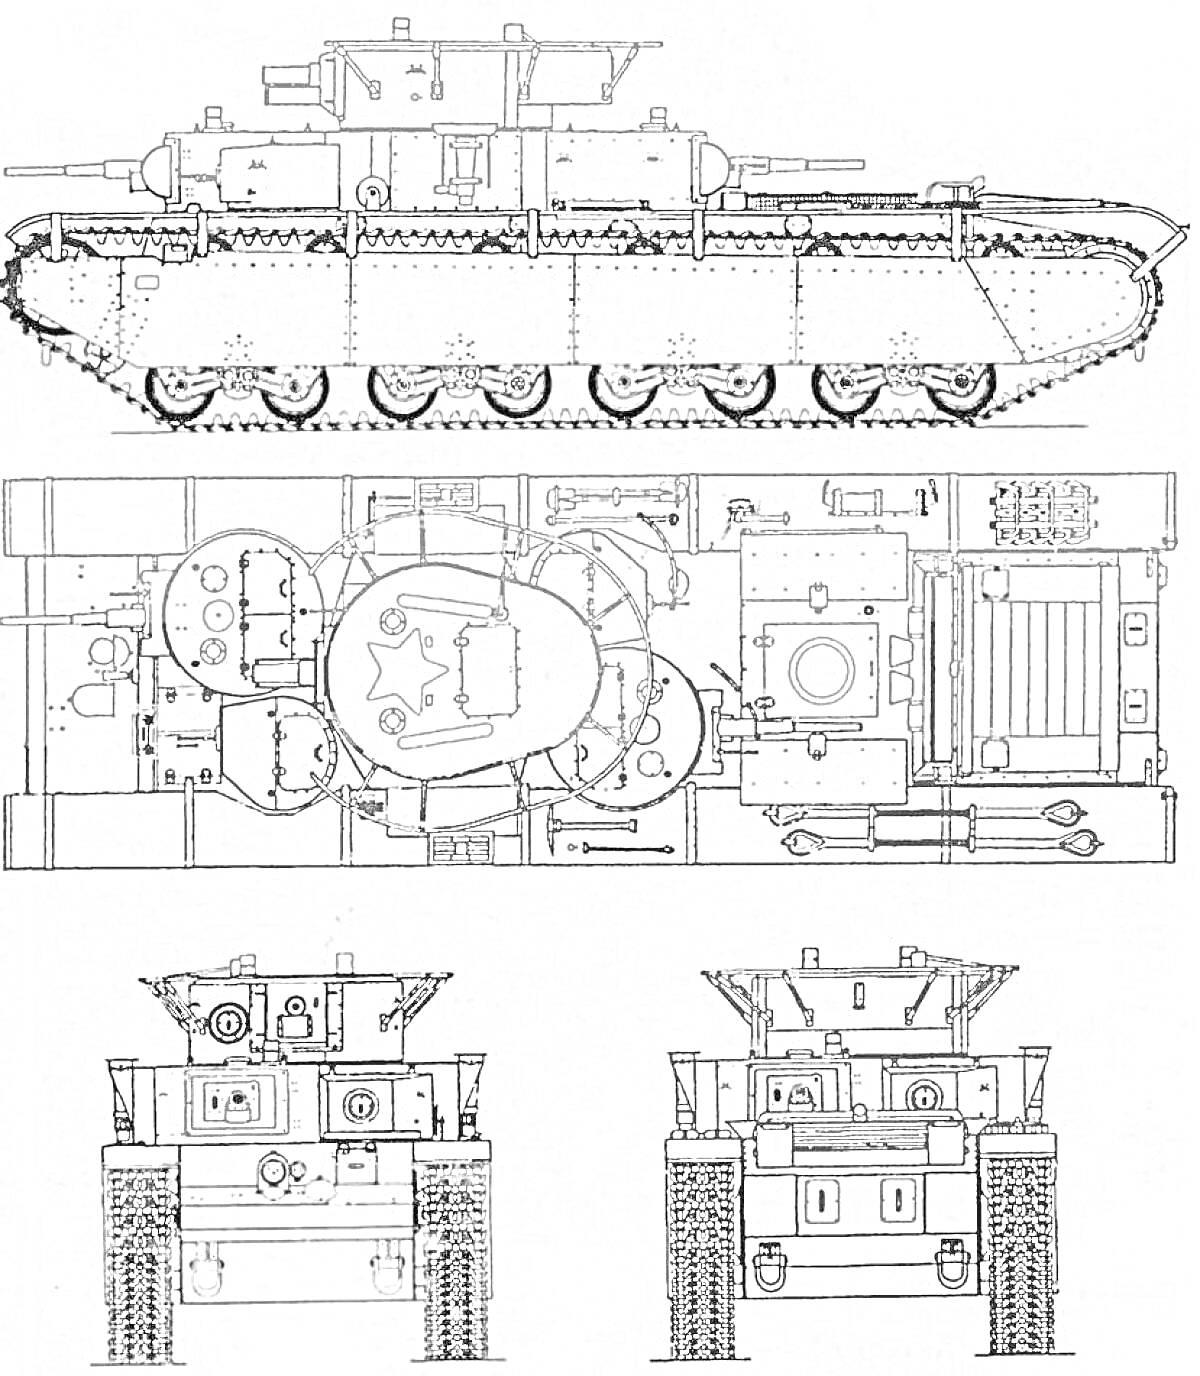 Чертеж танка Т-35, вид сбоку, сверху и с двух фронтальных ракурсов